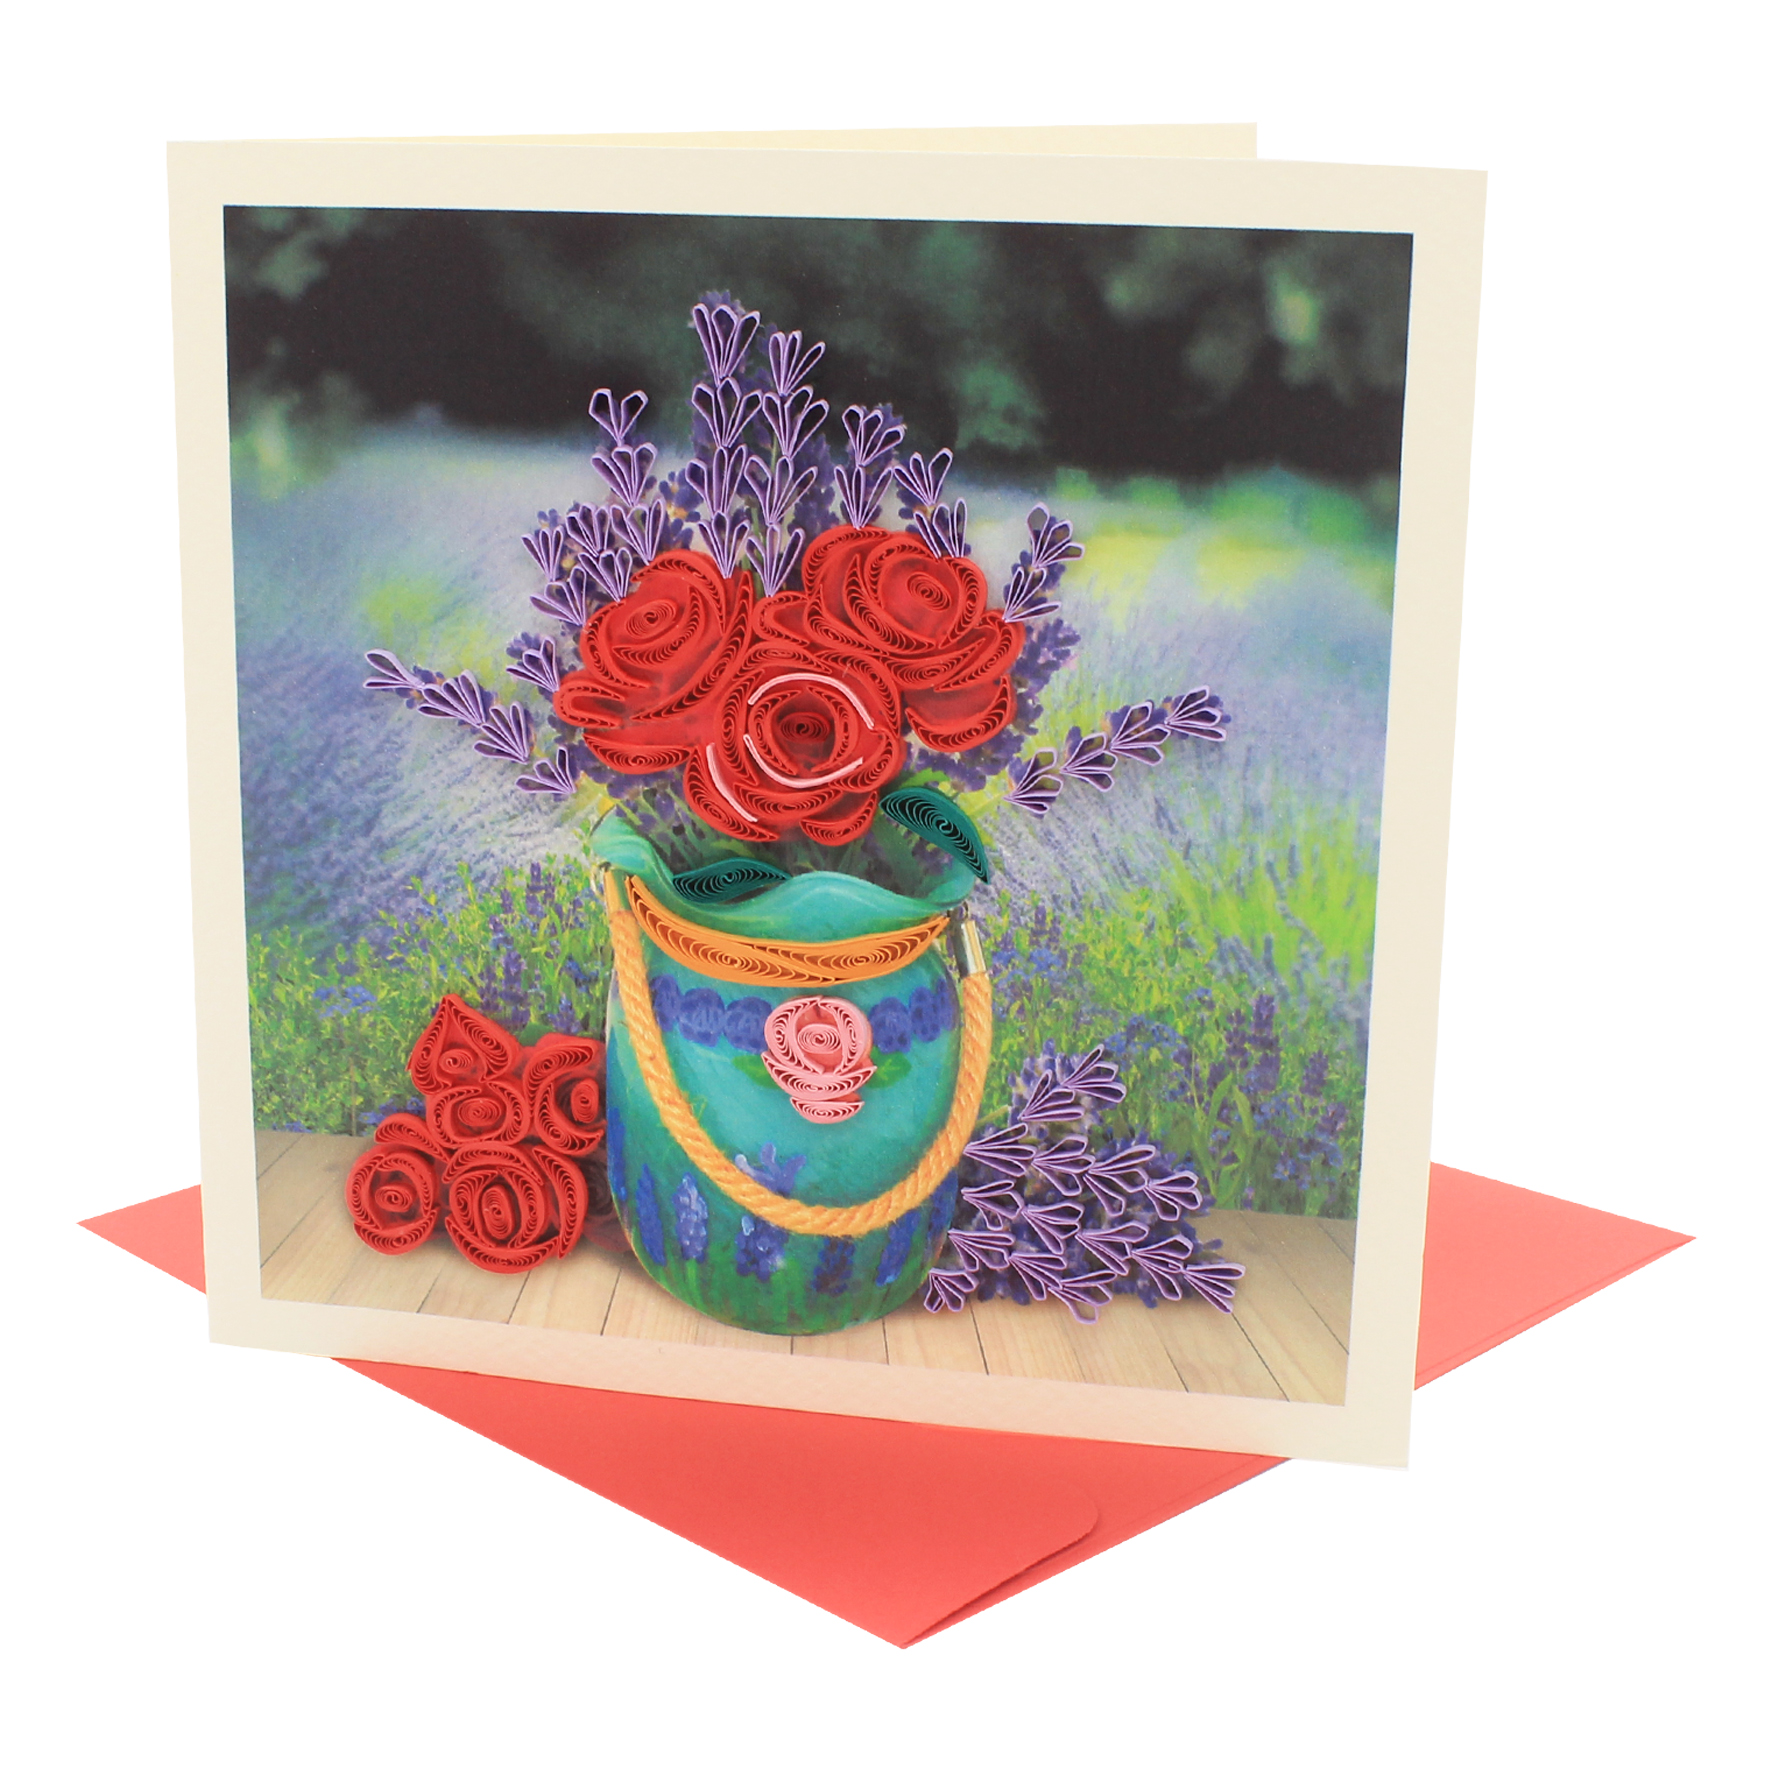 Thiệp Chúc Giấy Xoắn Thủ Công (Quilling Card) Bình Hoa Hồng &amp; Lavender - Tặng Kèm Khung Giấy Để Bàn